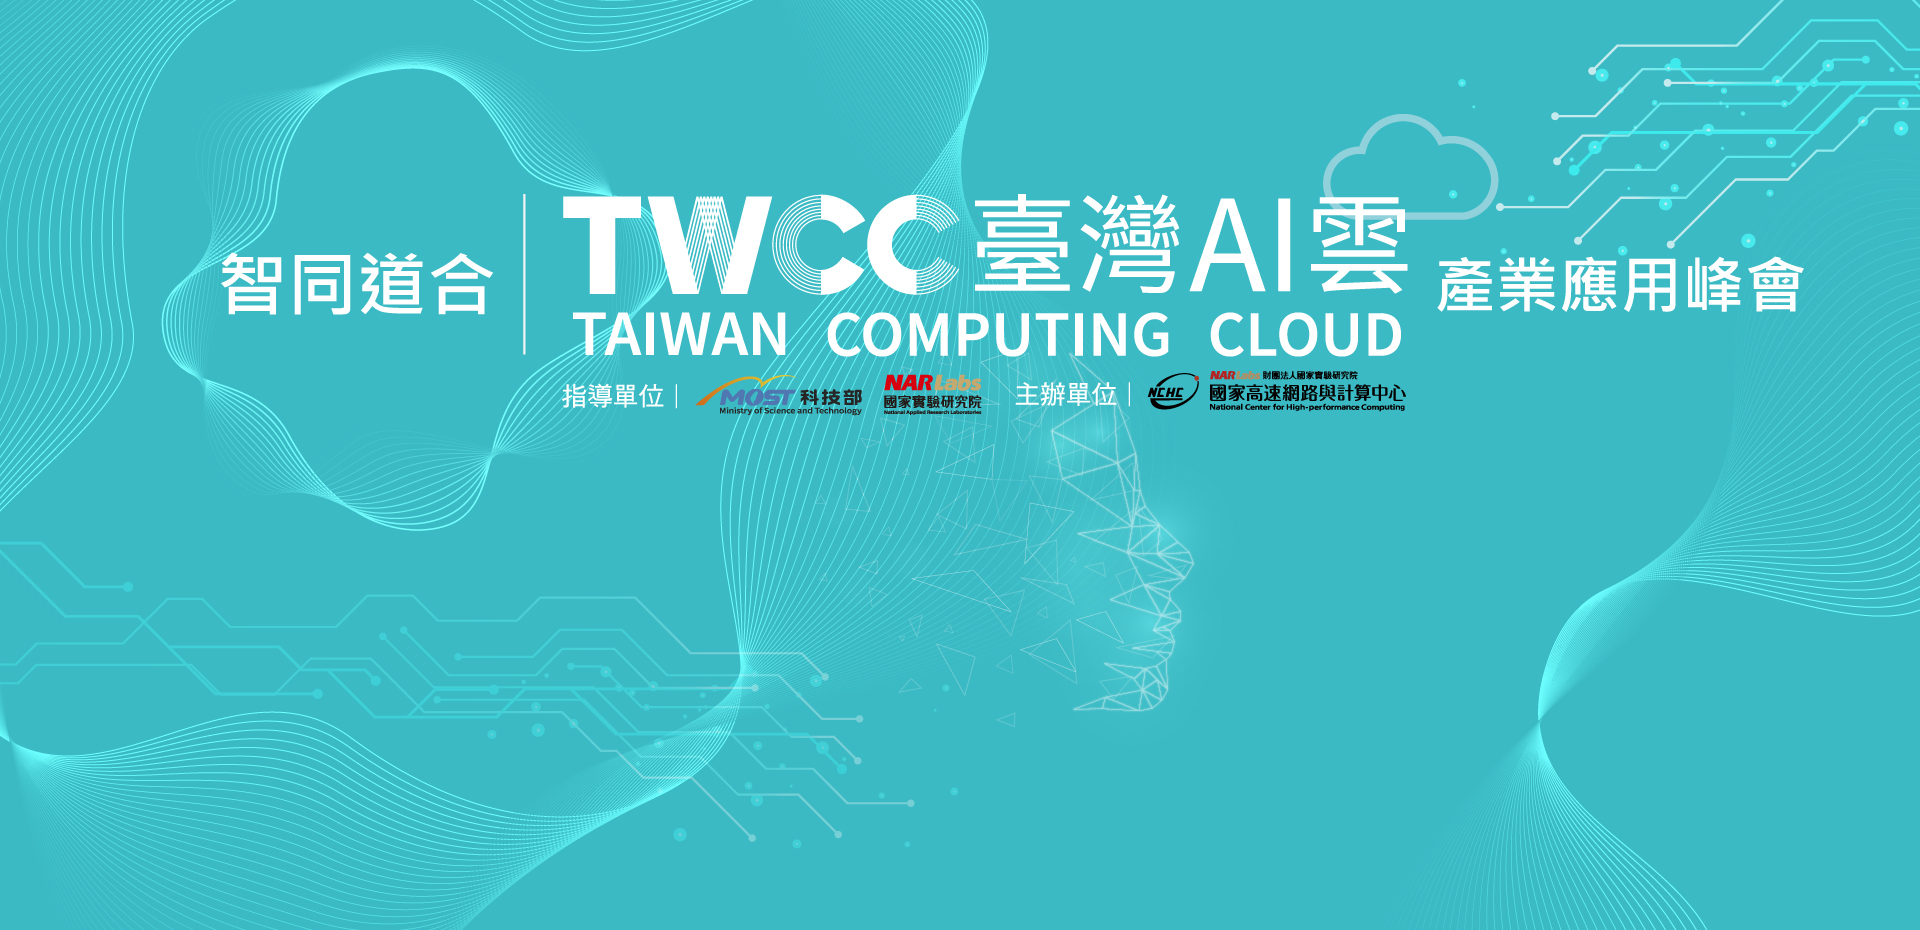 智同道合-TWCC臺灣AI雲產業應用峰會海報